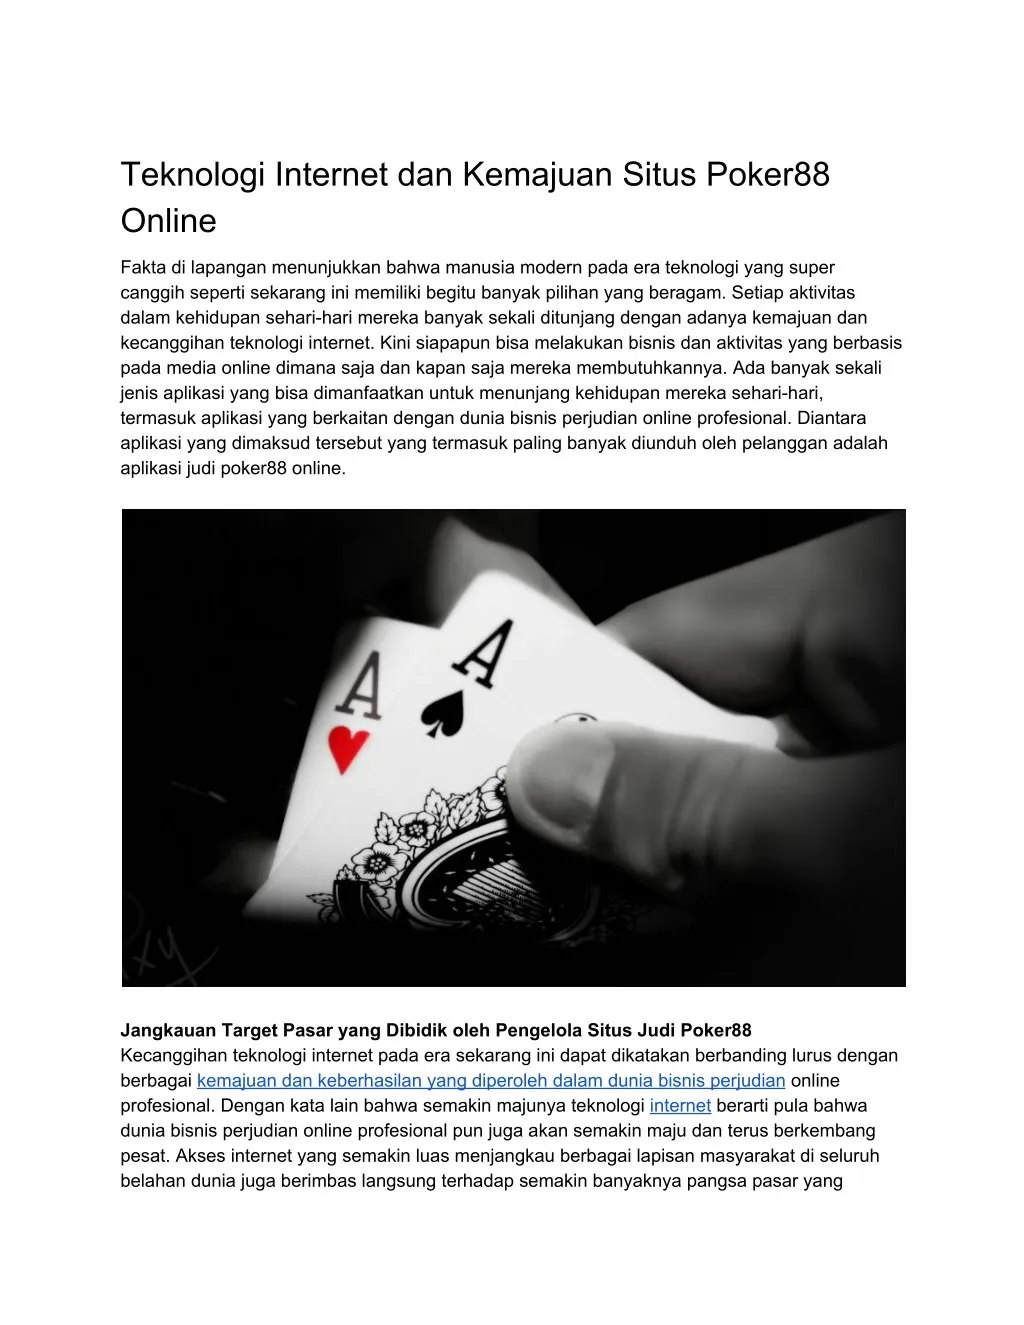 teknologi internet dan kemajuan situs poker88